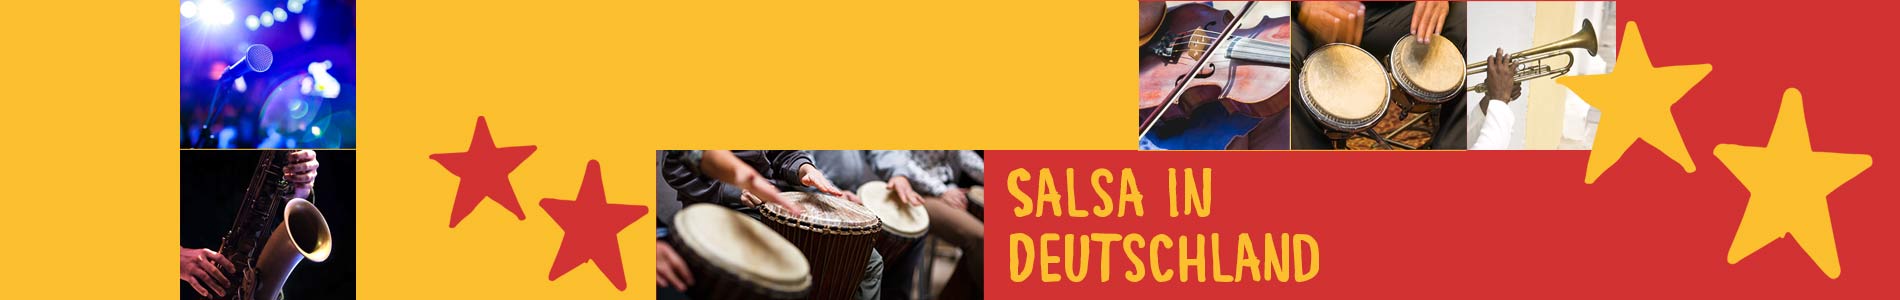 Salsa in Brotterode – Salsa lernen und tanzen, Tanzkurse, Partys, Veranstaltungen